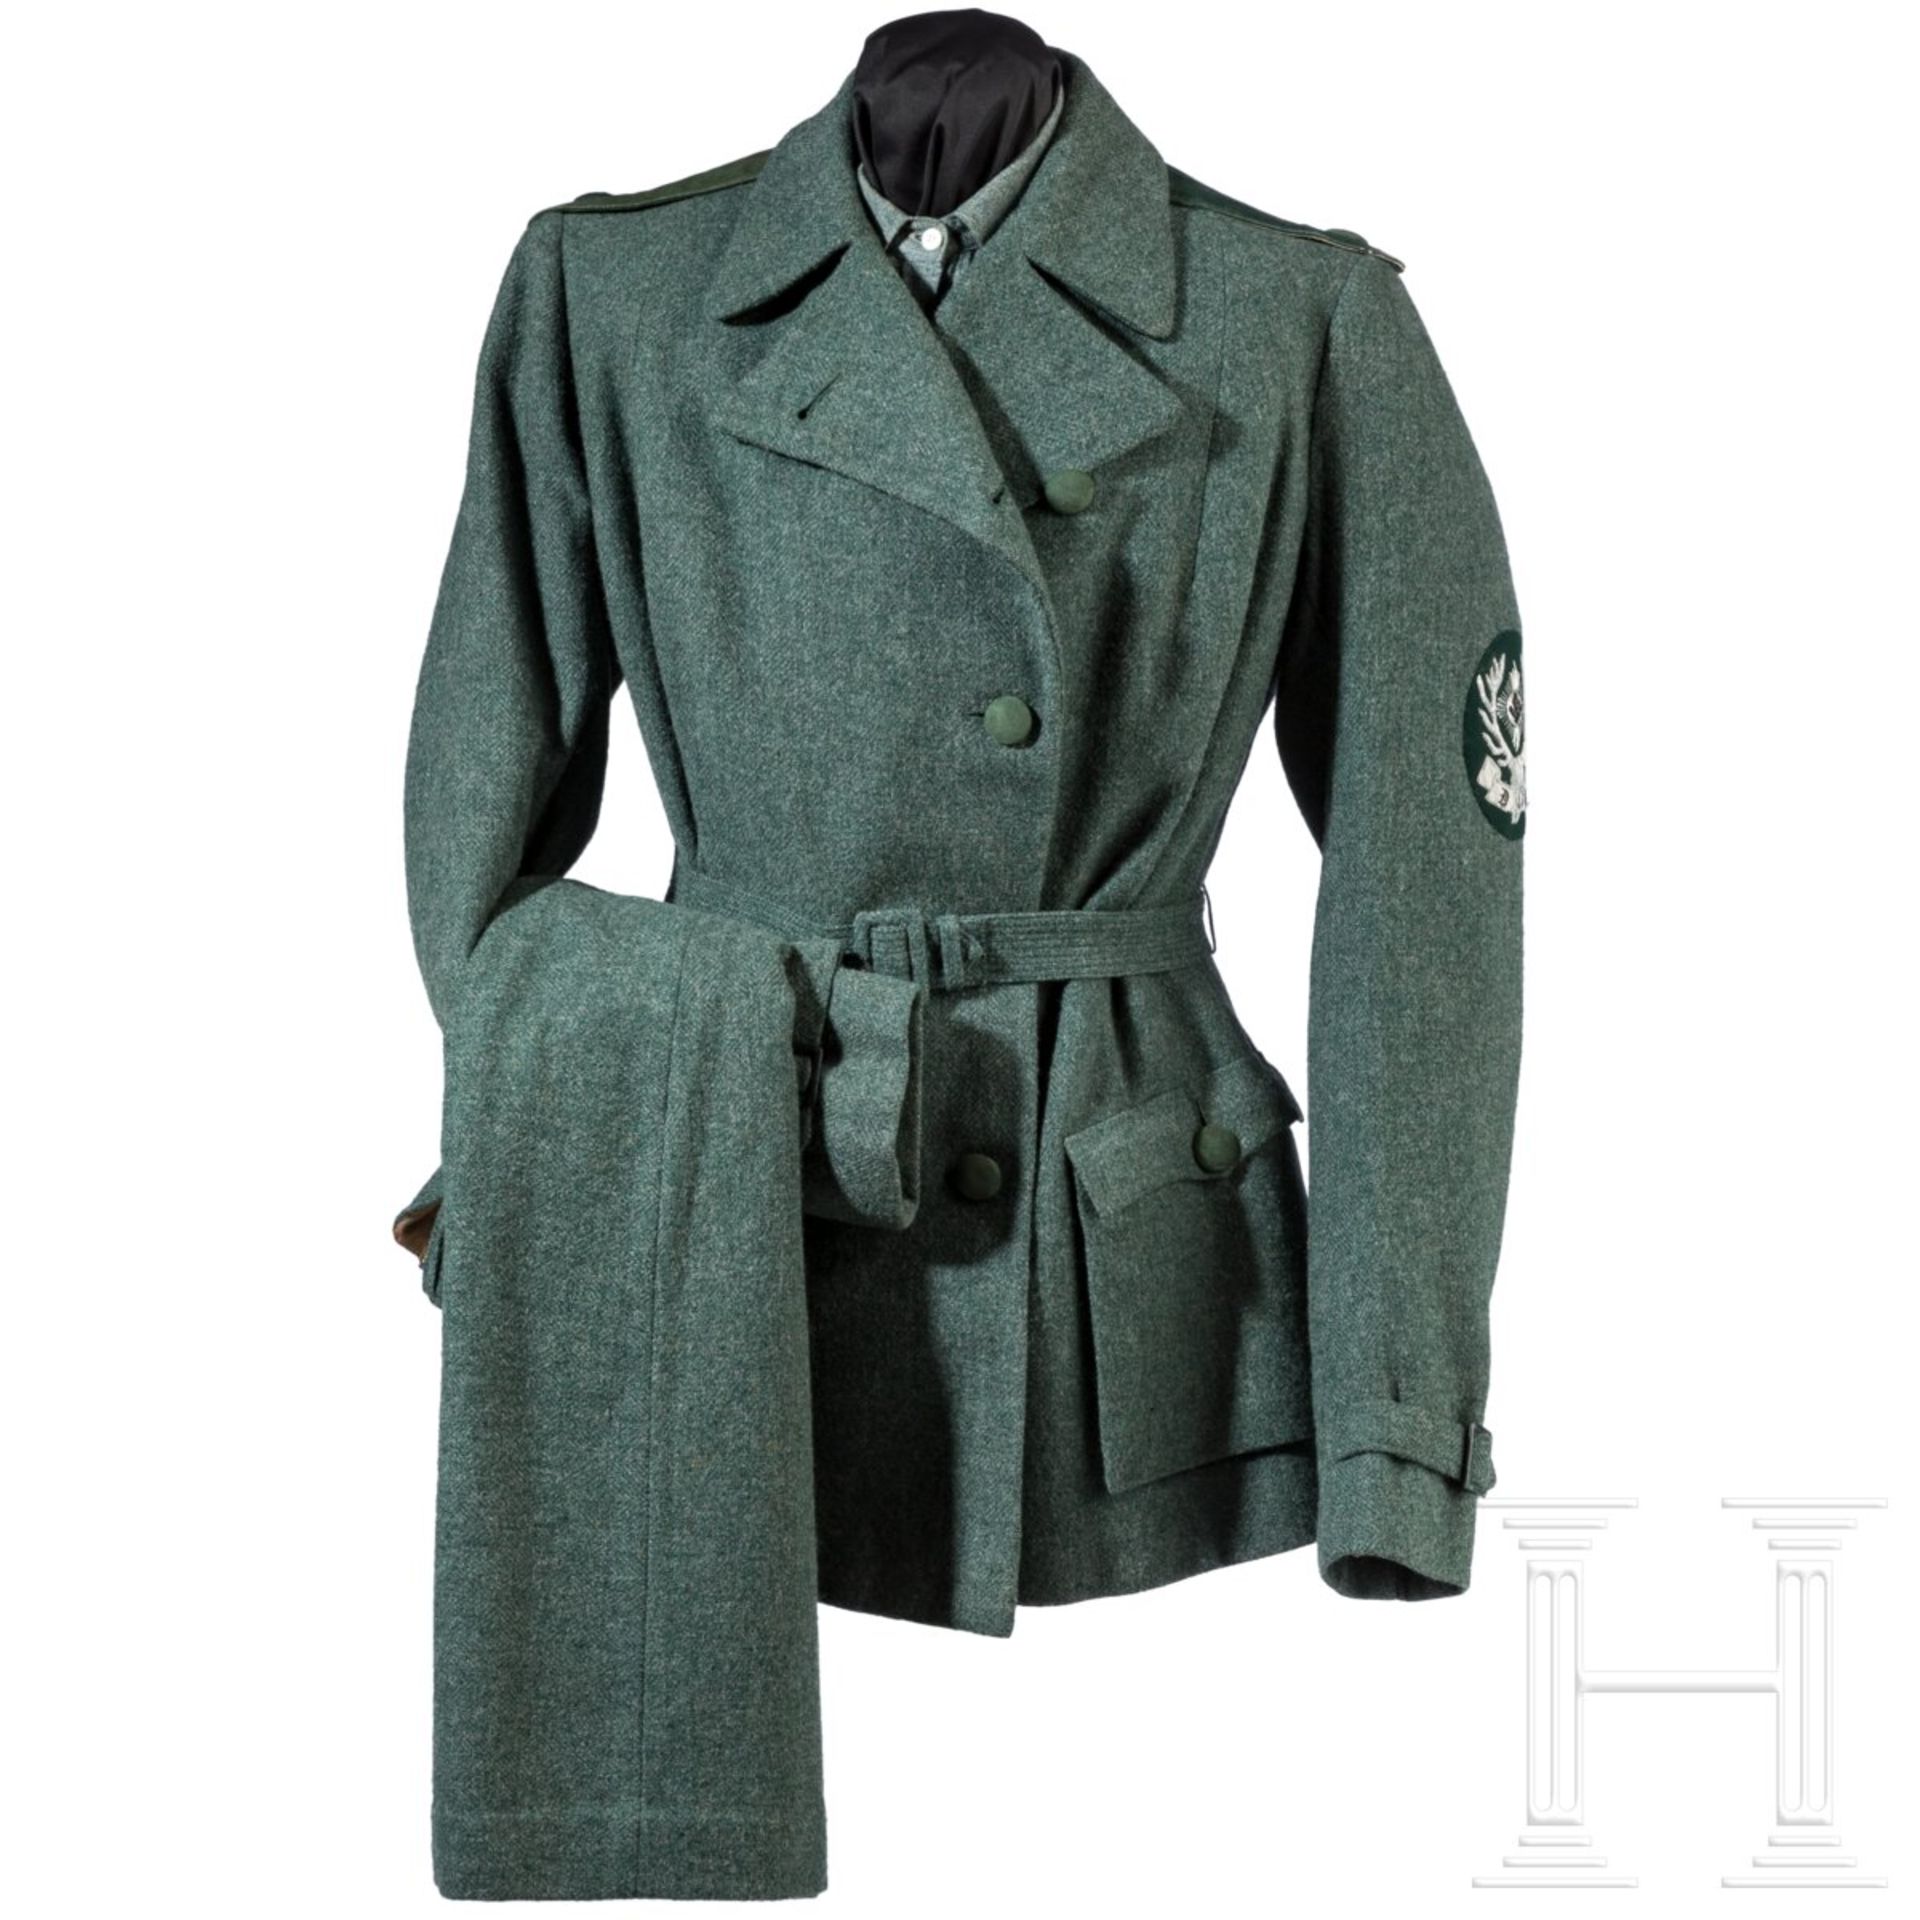 Uniformensemble einer weiblichen Angestellten beim Gau- oder Reichsjägermeister